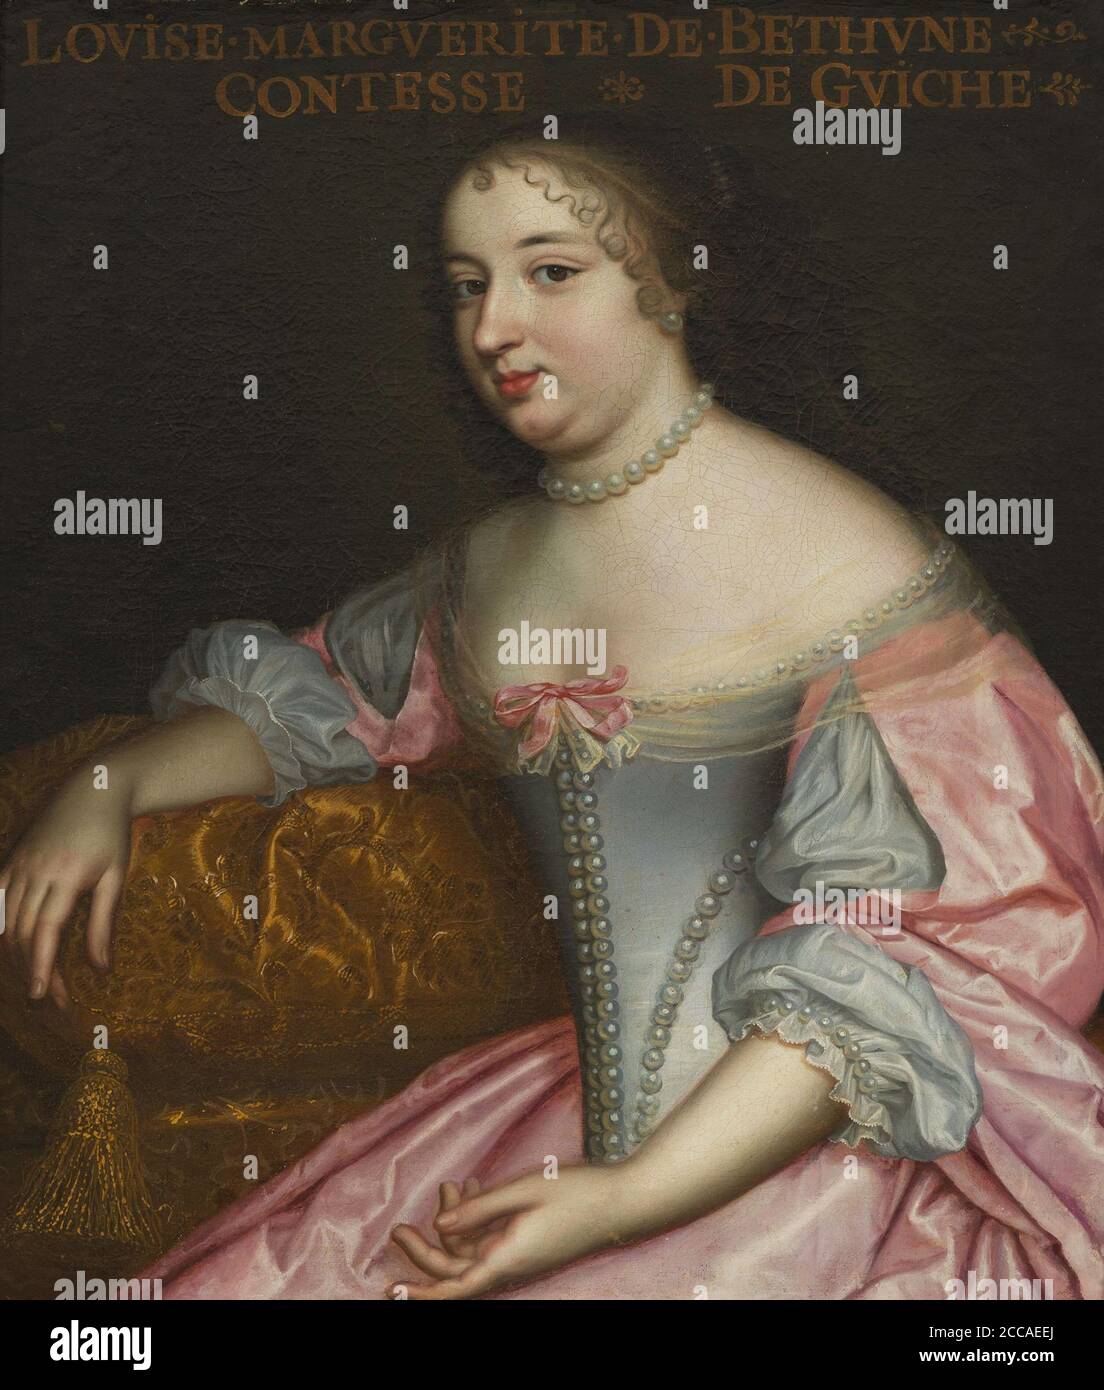 Marguerite Louise Suzanne de Béthune (1643-1726), Comtesse de Guiche, Duchesse de Lude. Museum: Musée de l'Histoire de France, Château de Versailles. Author: ANONYMOUS. Stock Photo